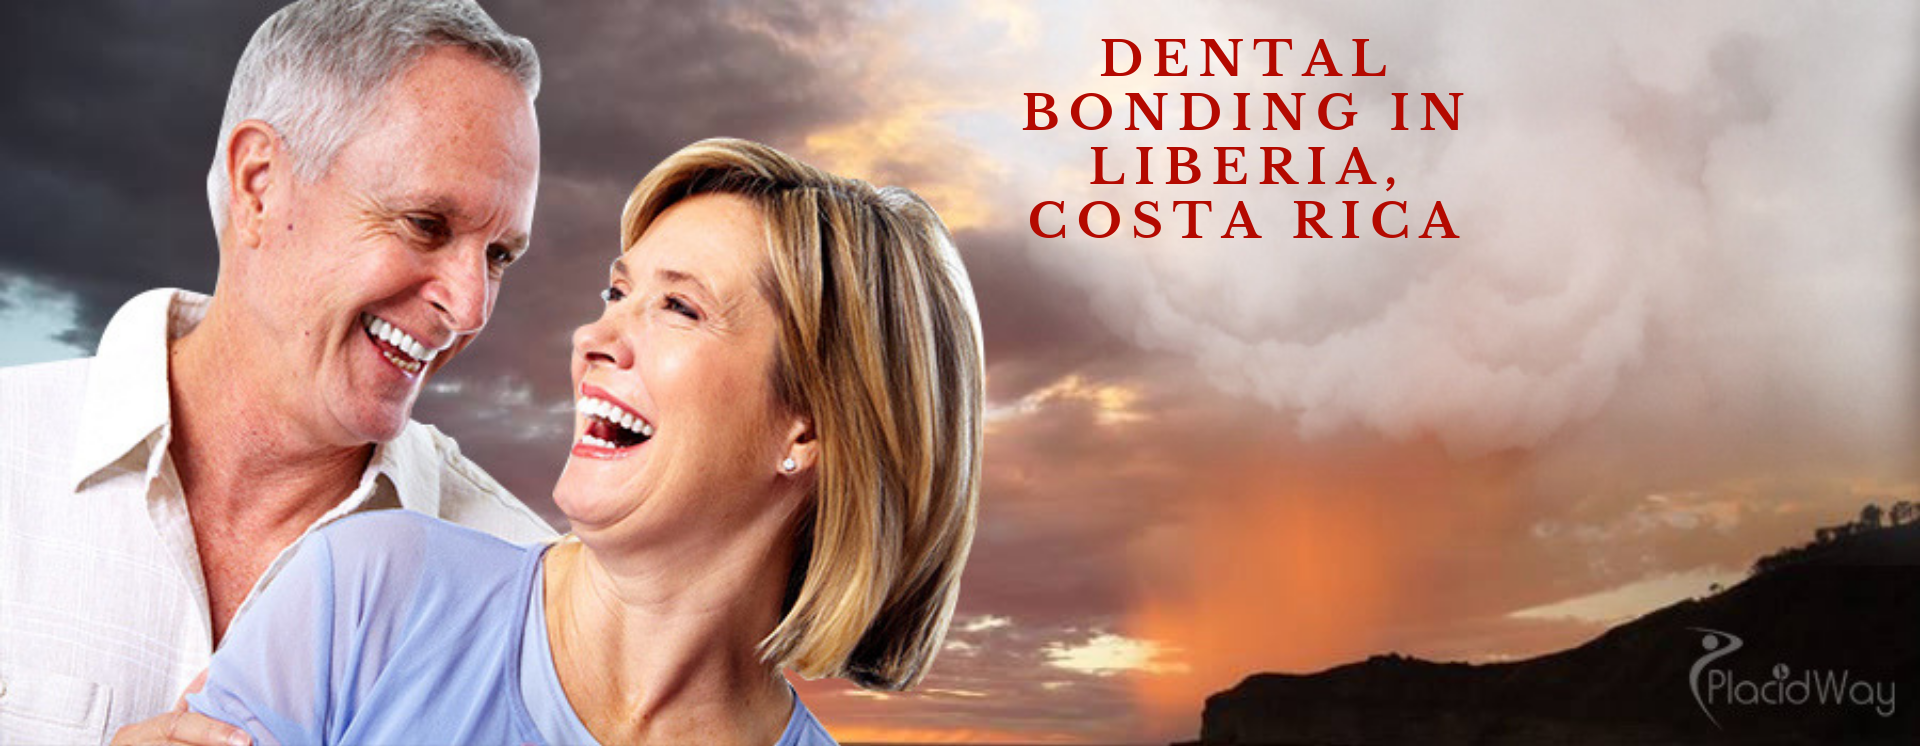 Dental Bonding in Liberia, Costa Rica